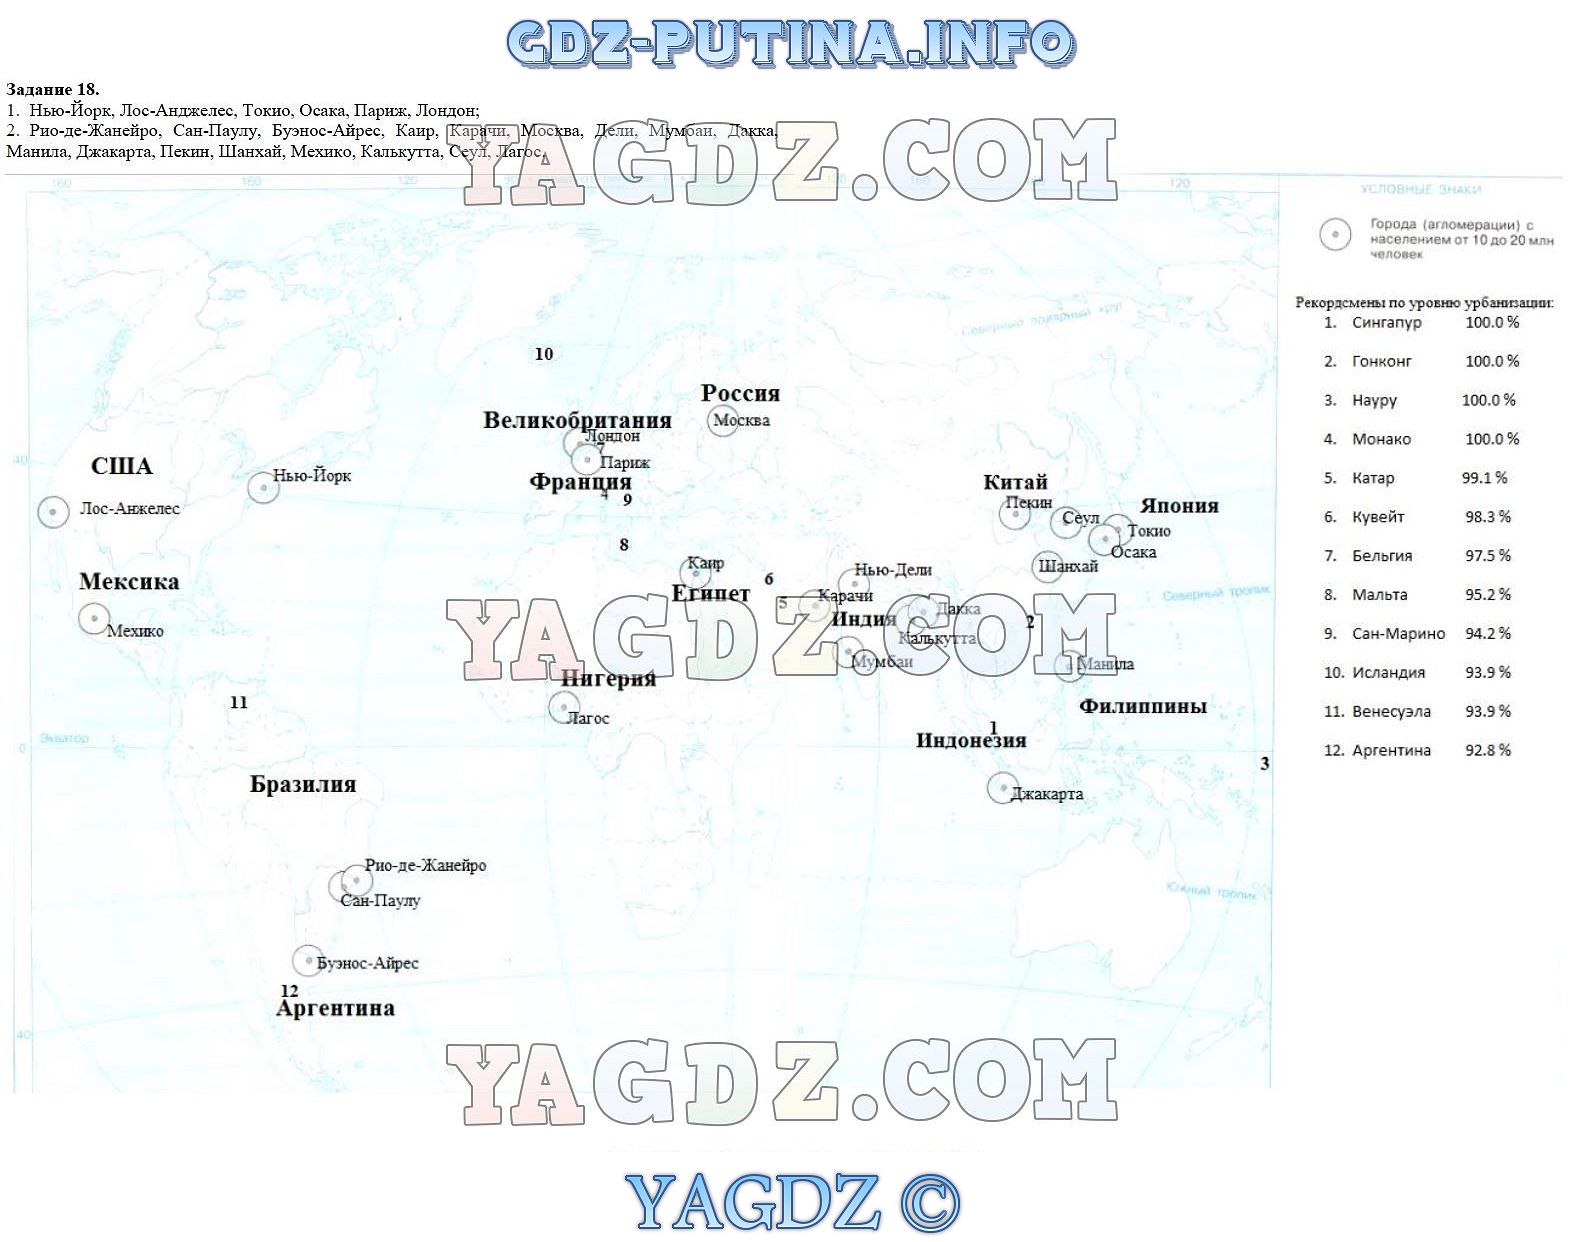 Гдз к рабочей тетради по географии максаковский 10 класс онлайн